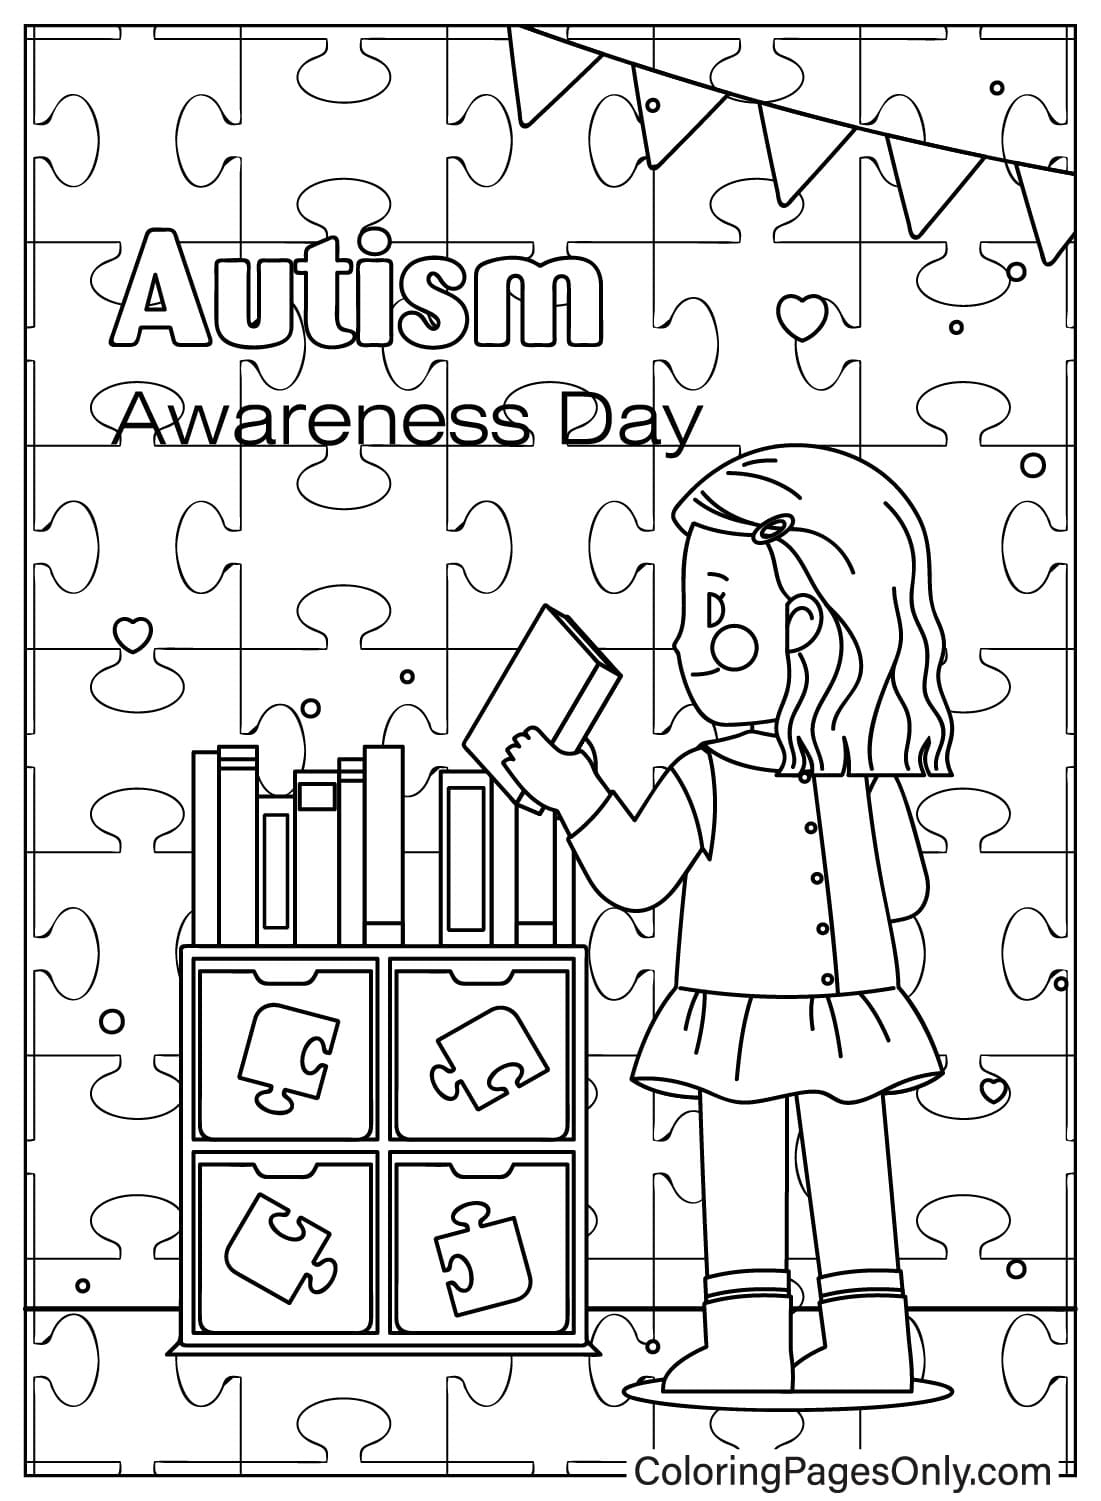 Página para colorear de concientización sobre el autismo para niños del Día Mundial de Concientización sobre el Autismo